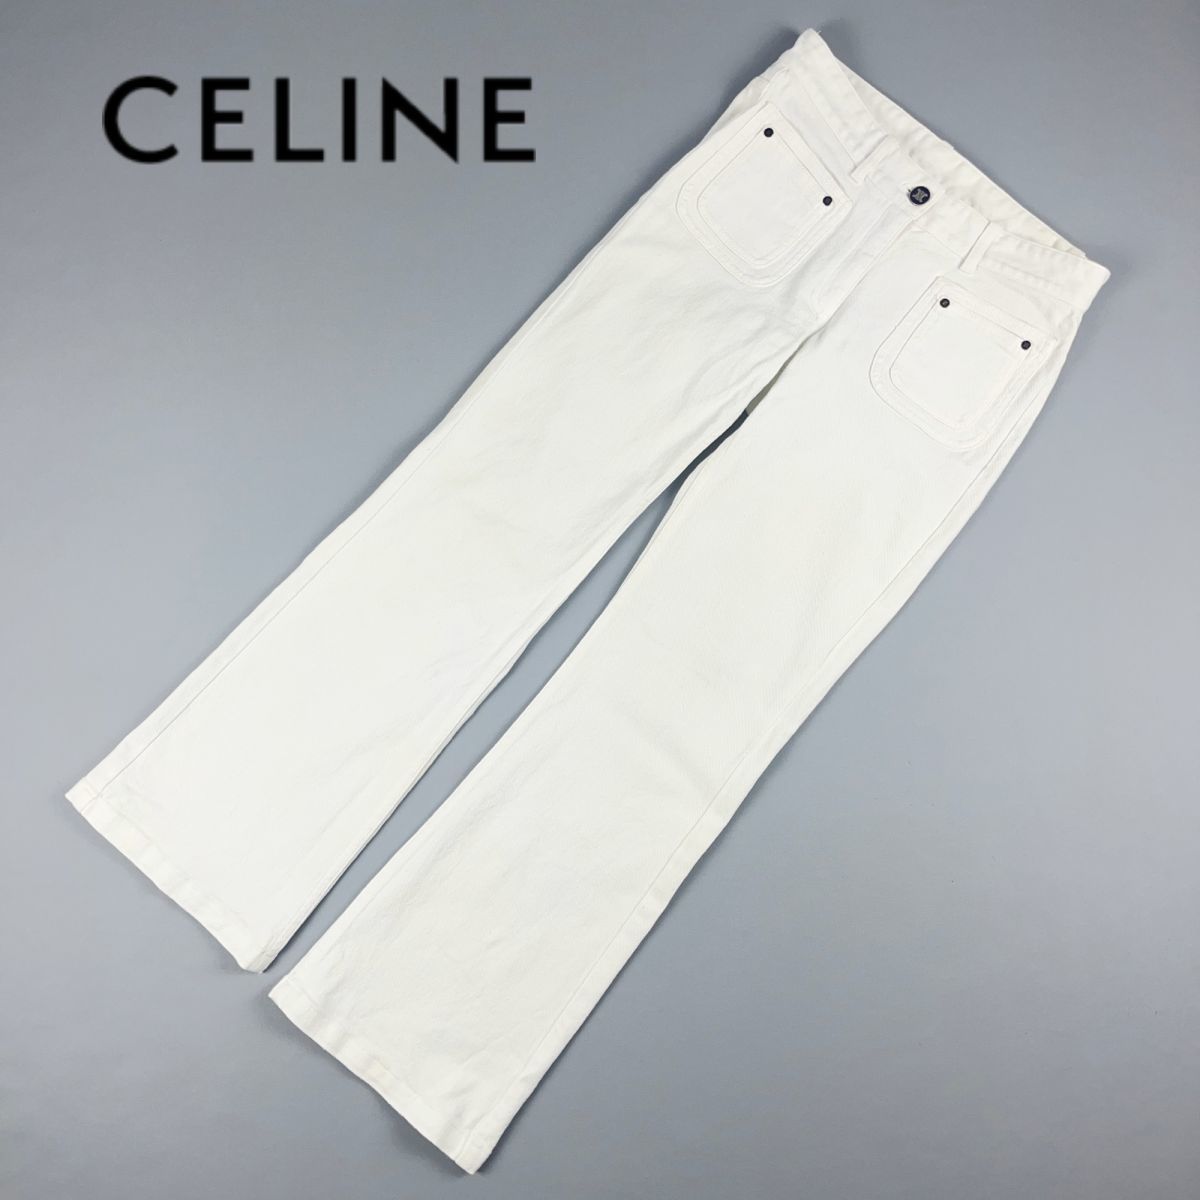 CELINE セリーヌ フロントポケットデザインデニムセミフレアパンツ ボトムス レディース 白 ホワイト サイズ36*KC854_画像1